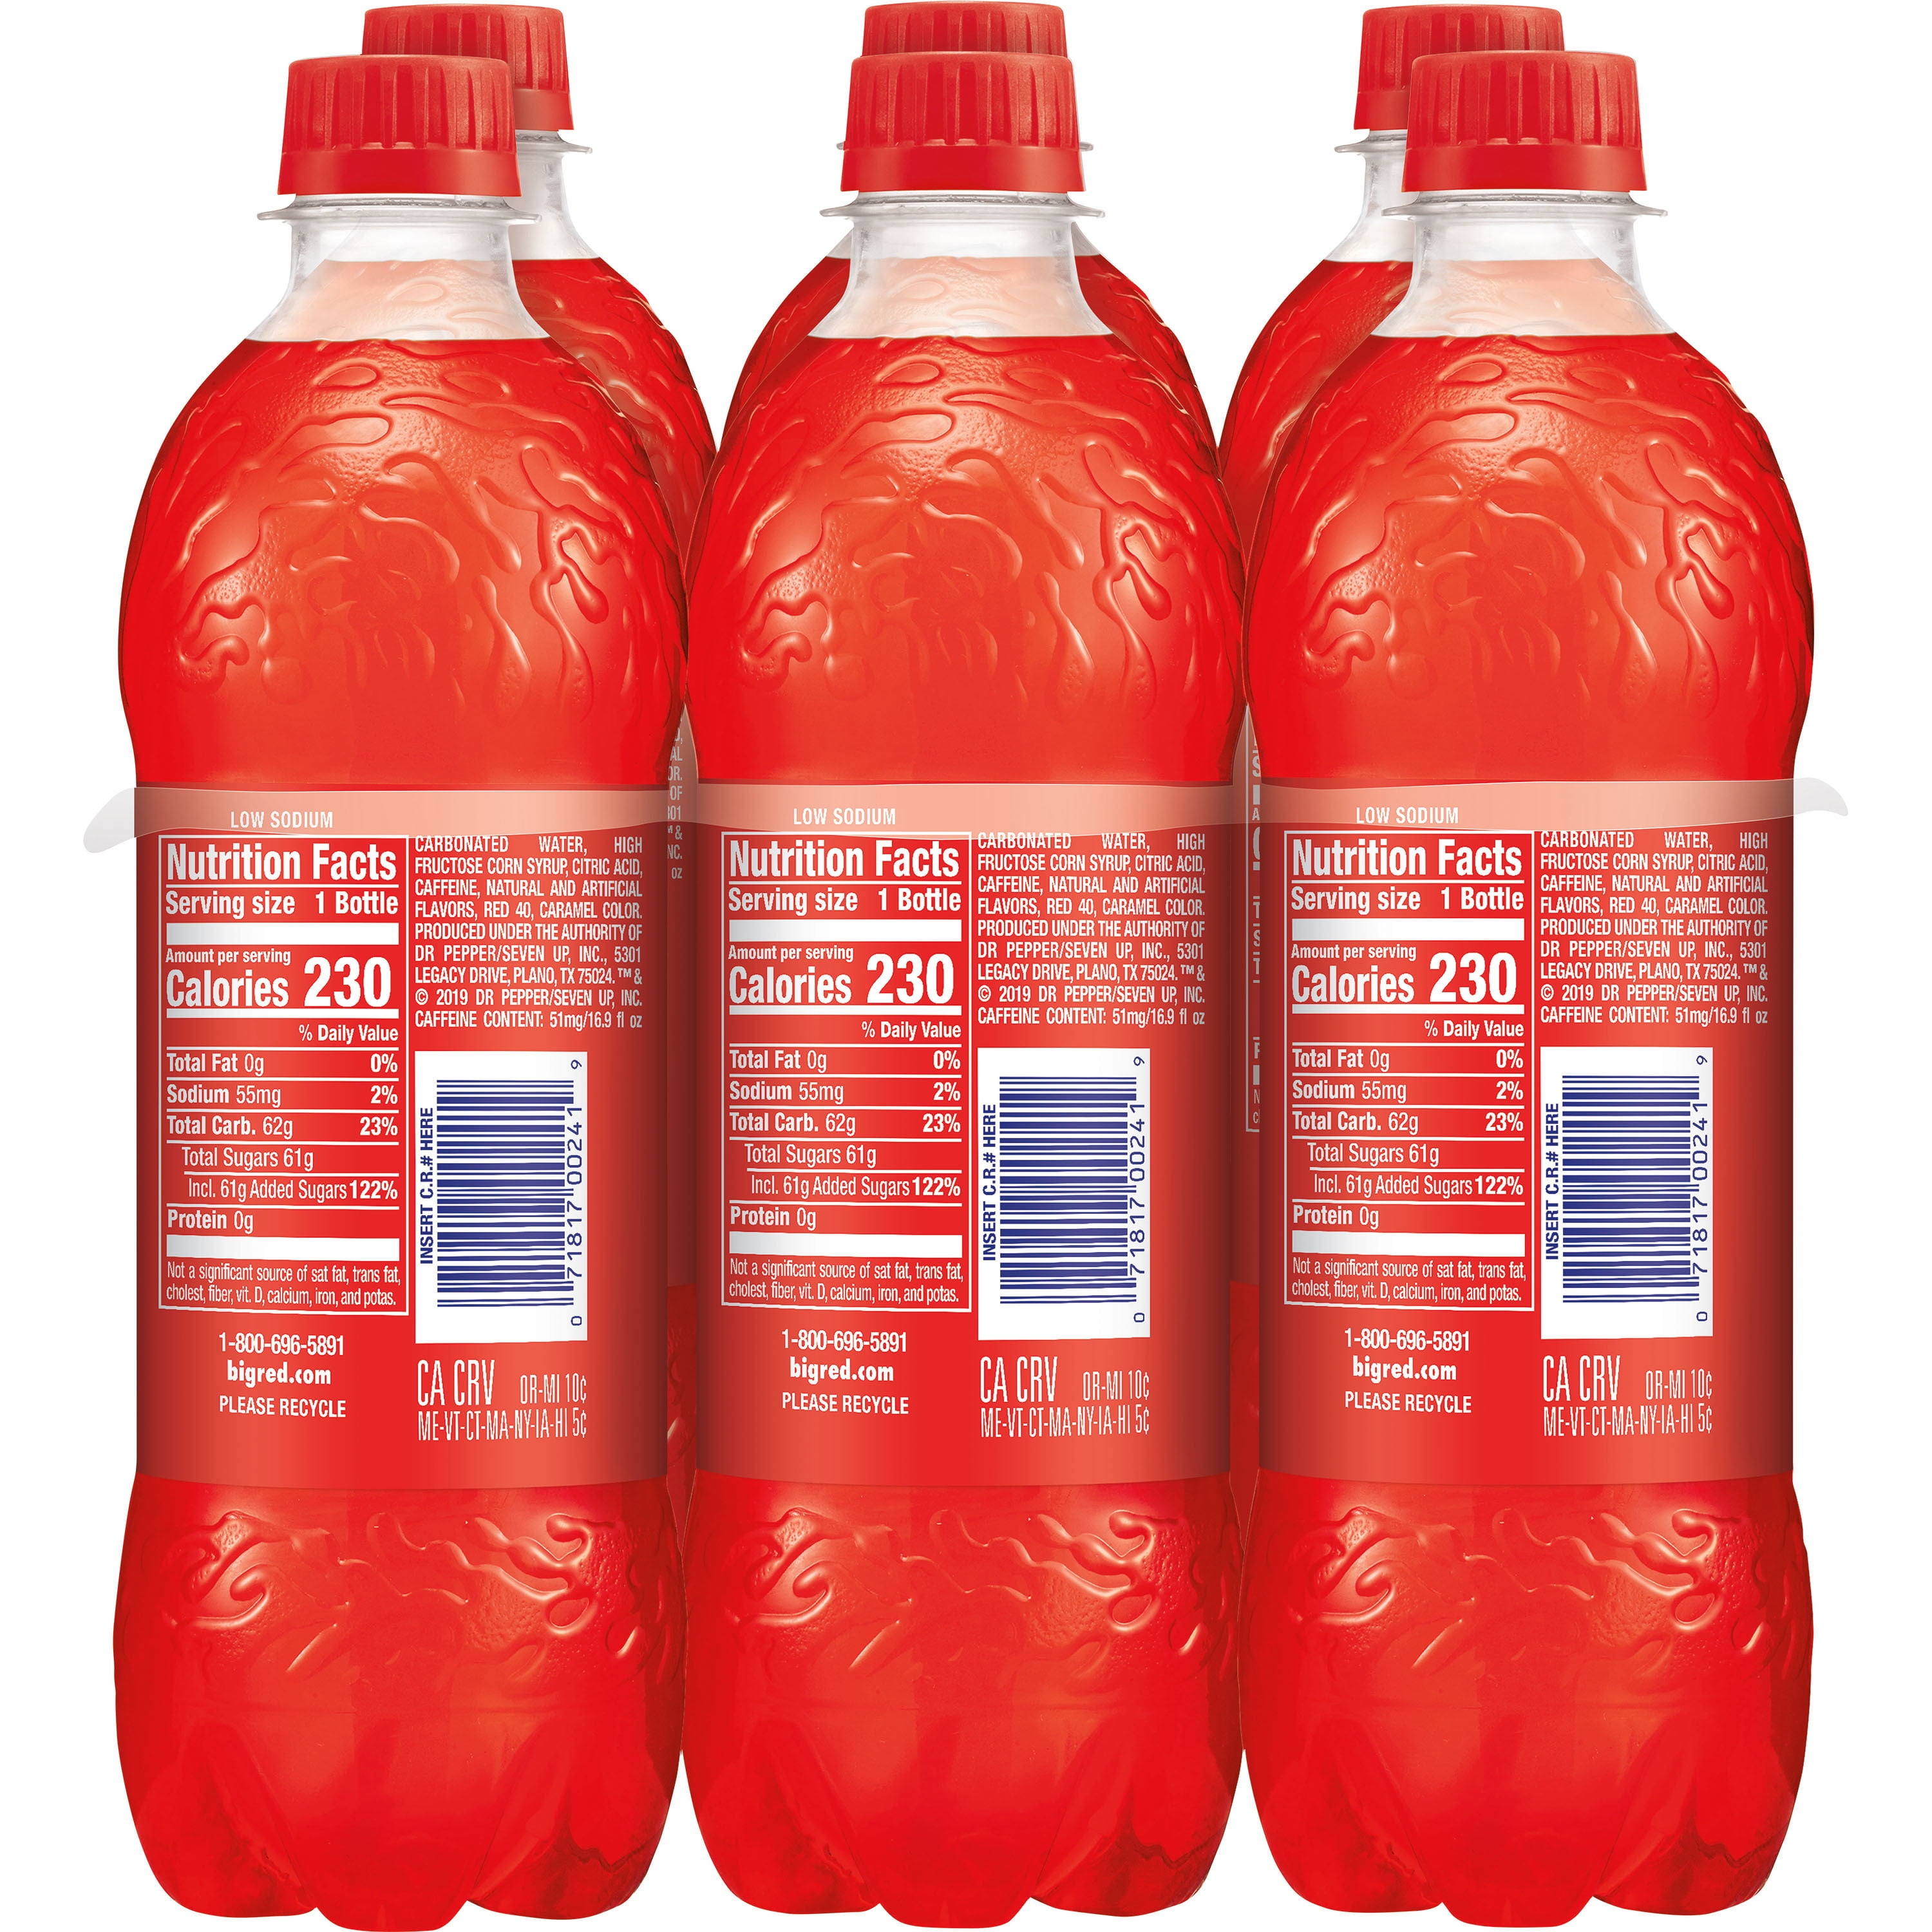 Big Red Soda Bottles, 6 bottles / 16.9 fl oz - Kroger